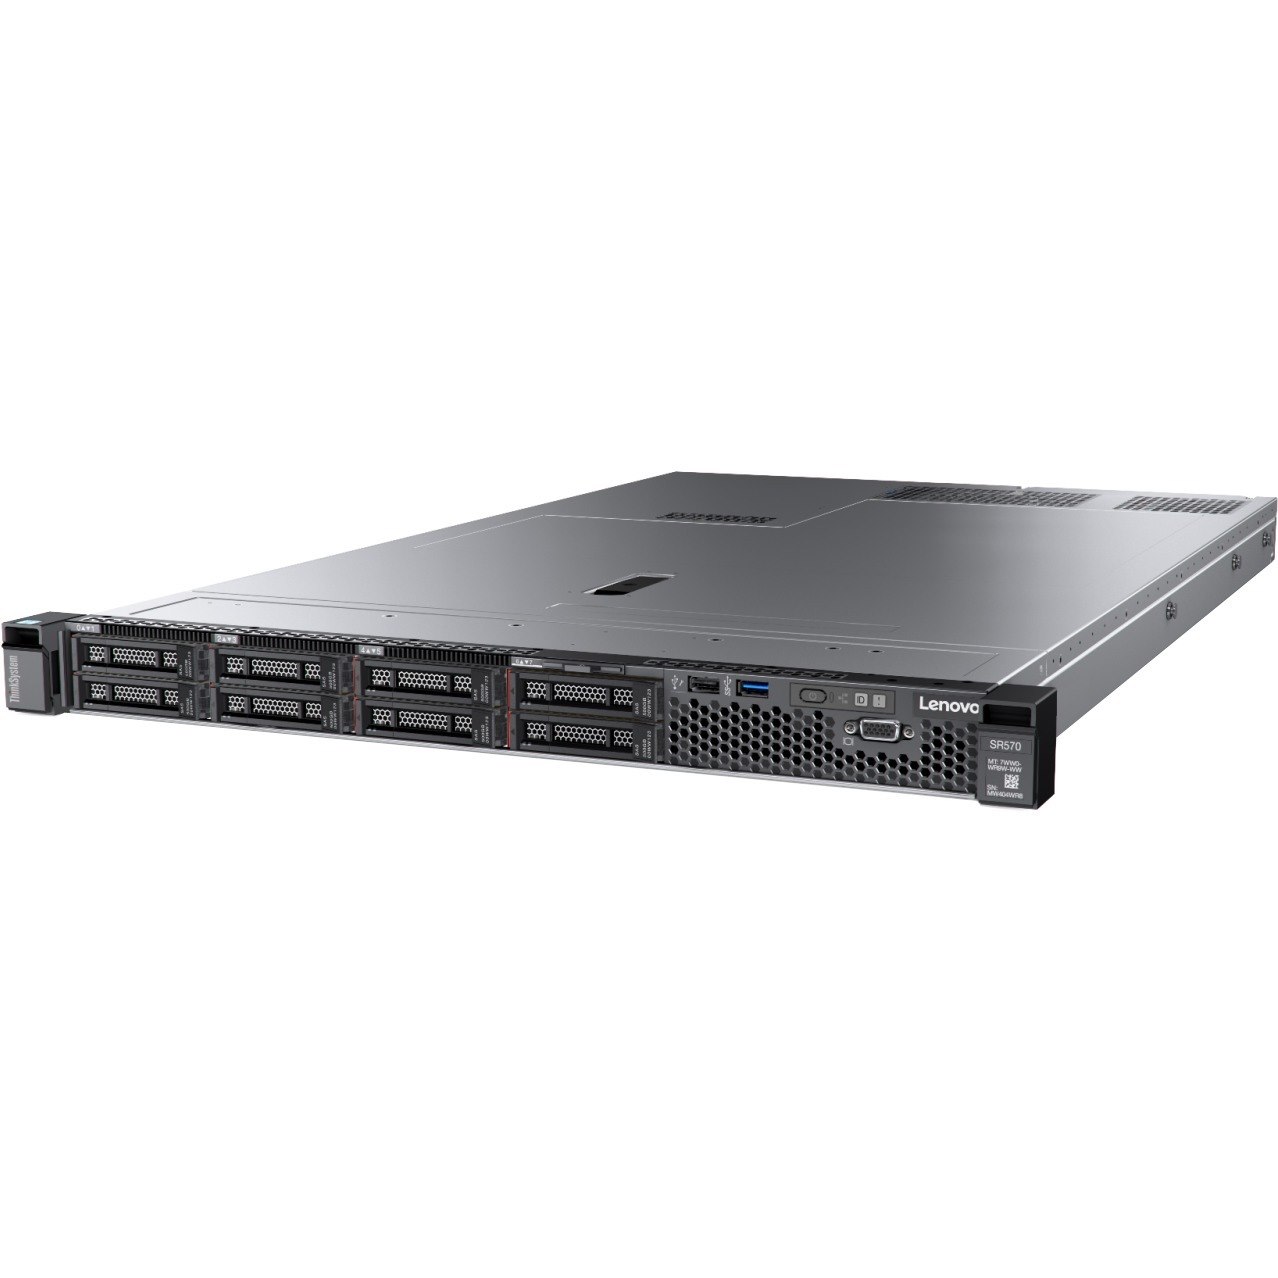 Lenovo ThinkSystem SR570 7Y03A02TAU 1U Rack Server - 1 x Intel Xeon Silver 4110 2.10 GHz - 16 GB RAM - 12Gb/s SAS, Serial ATA/600 Controller